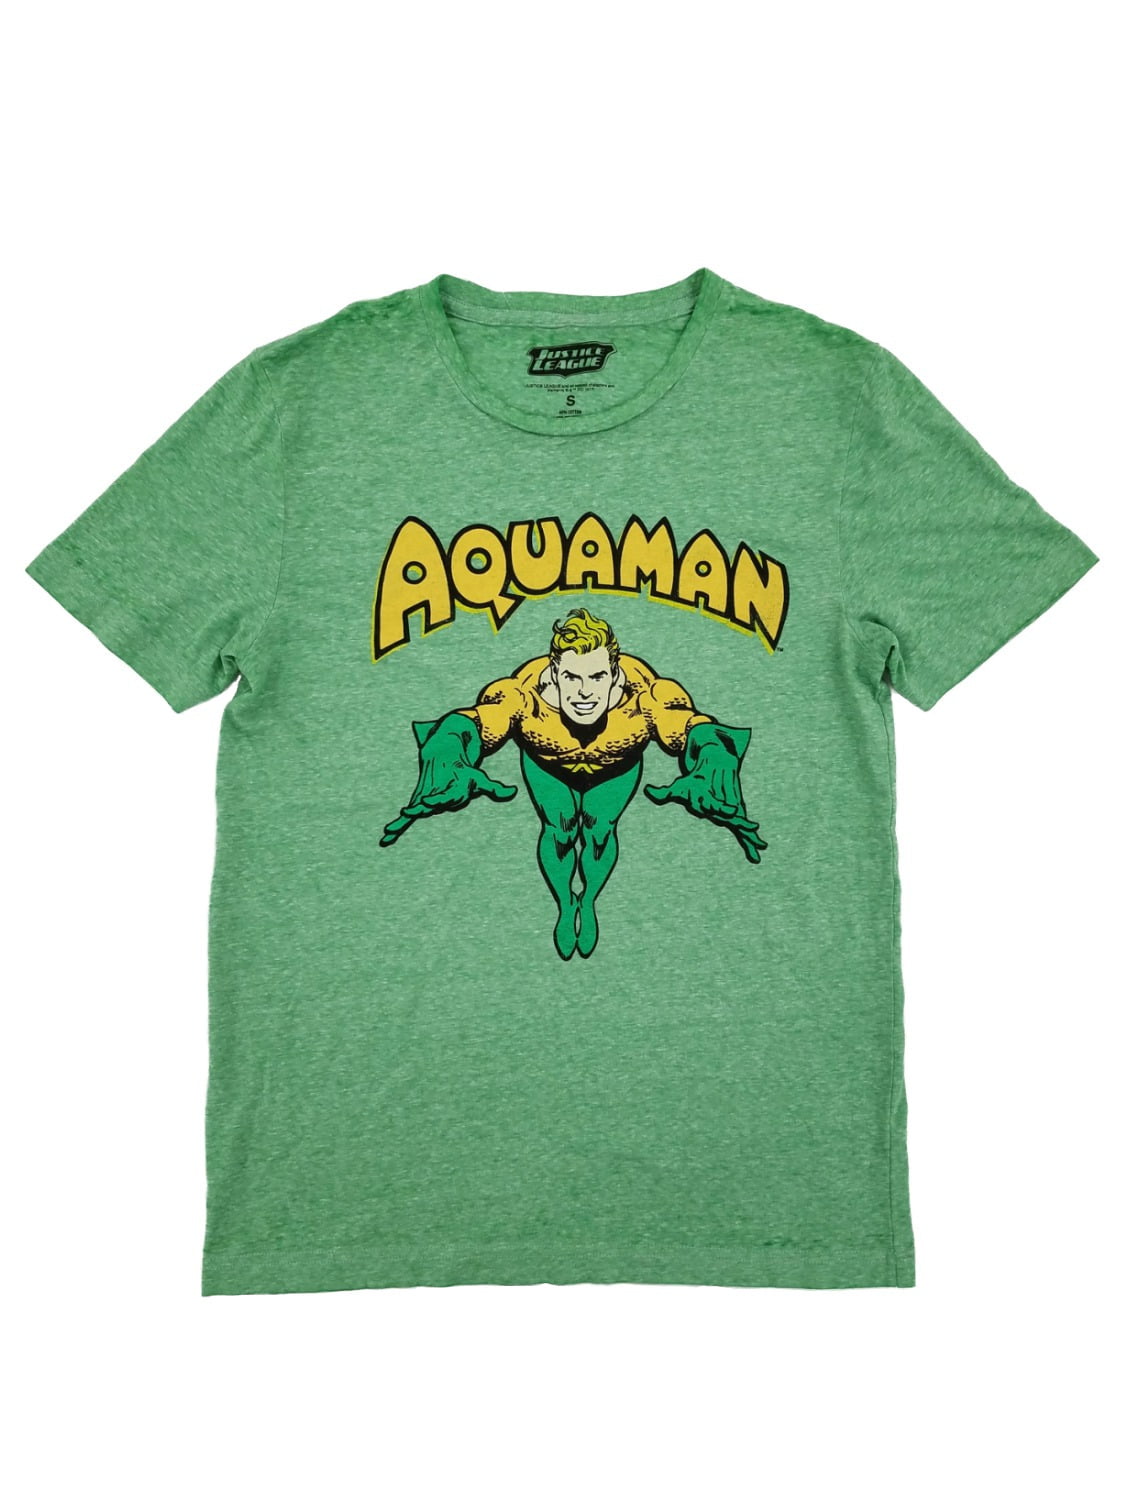 Aquaman DC Comics Justice League Pose Superhero T-Shirt Tee